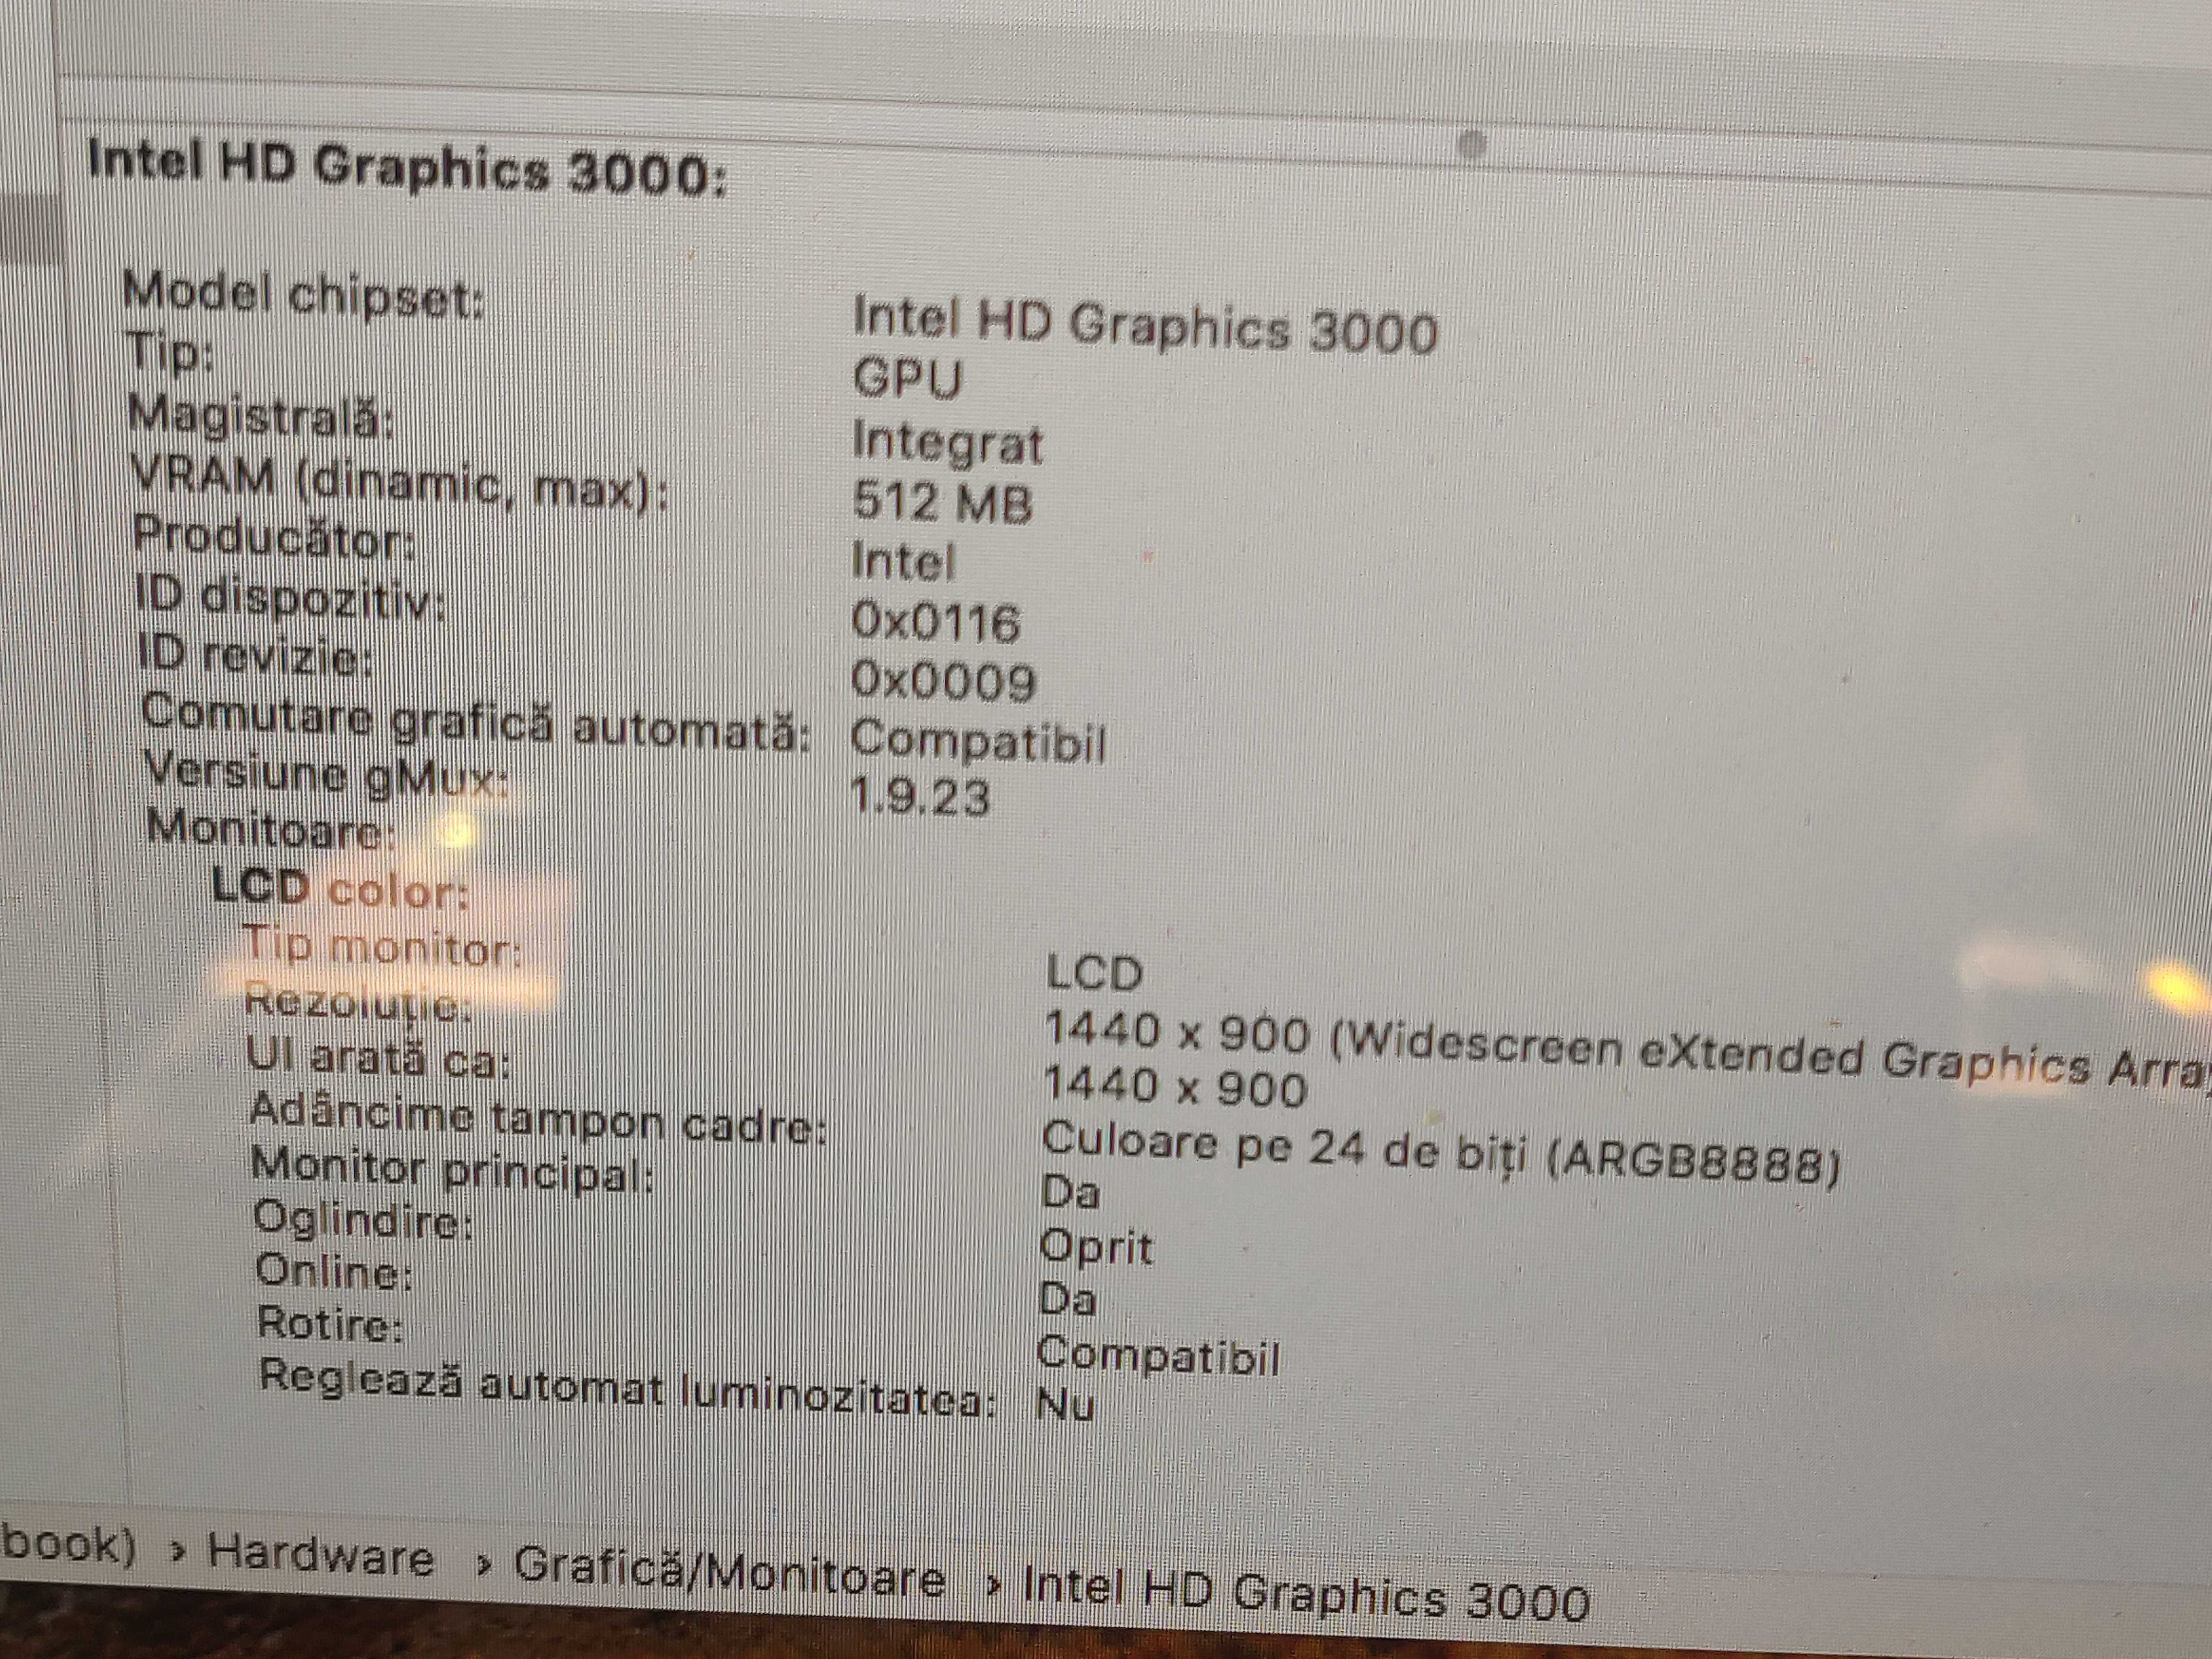 MacBook Pro 15 inch cu Intel i7